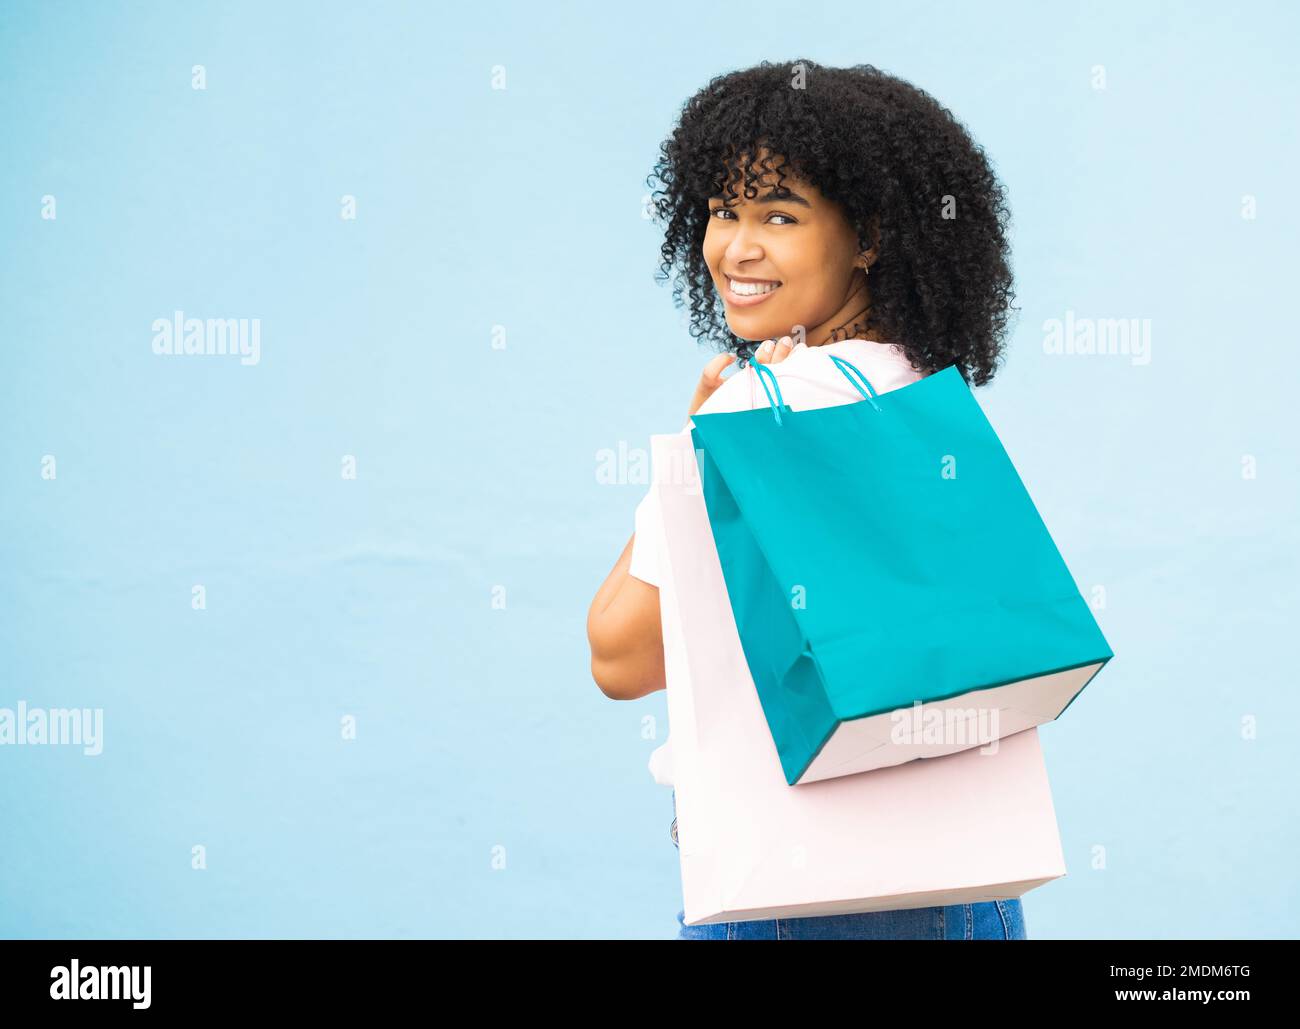 Zurück, Porträt und schwarze Frau mit Taschen, Einkaufen und teure Sachen mit Mädchen auf blauem Studiohintergrund kaufen. Modell, jamaikanische Frau und Stockfoto